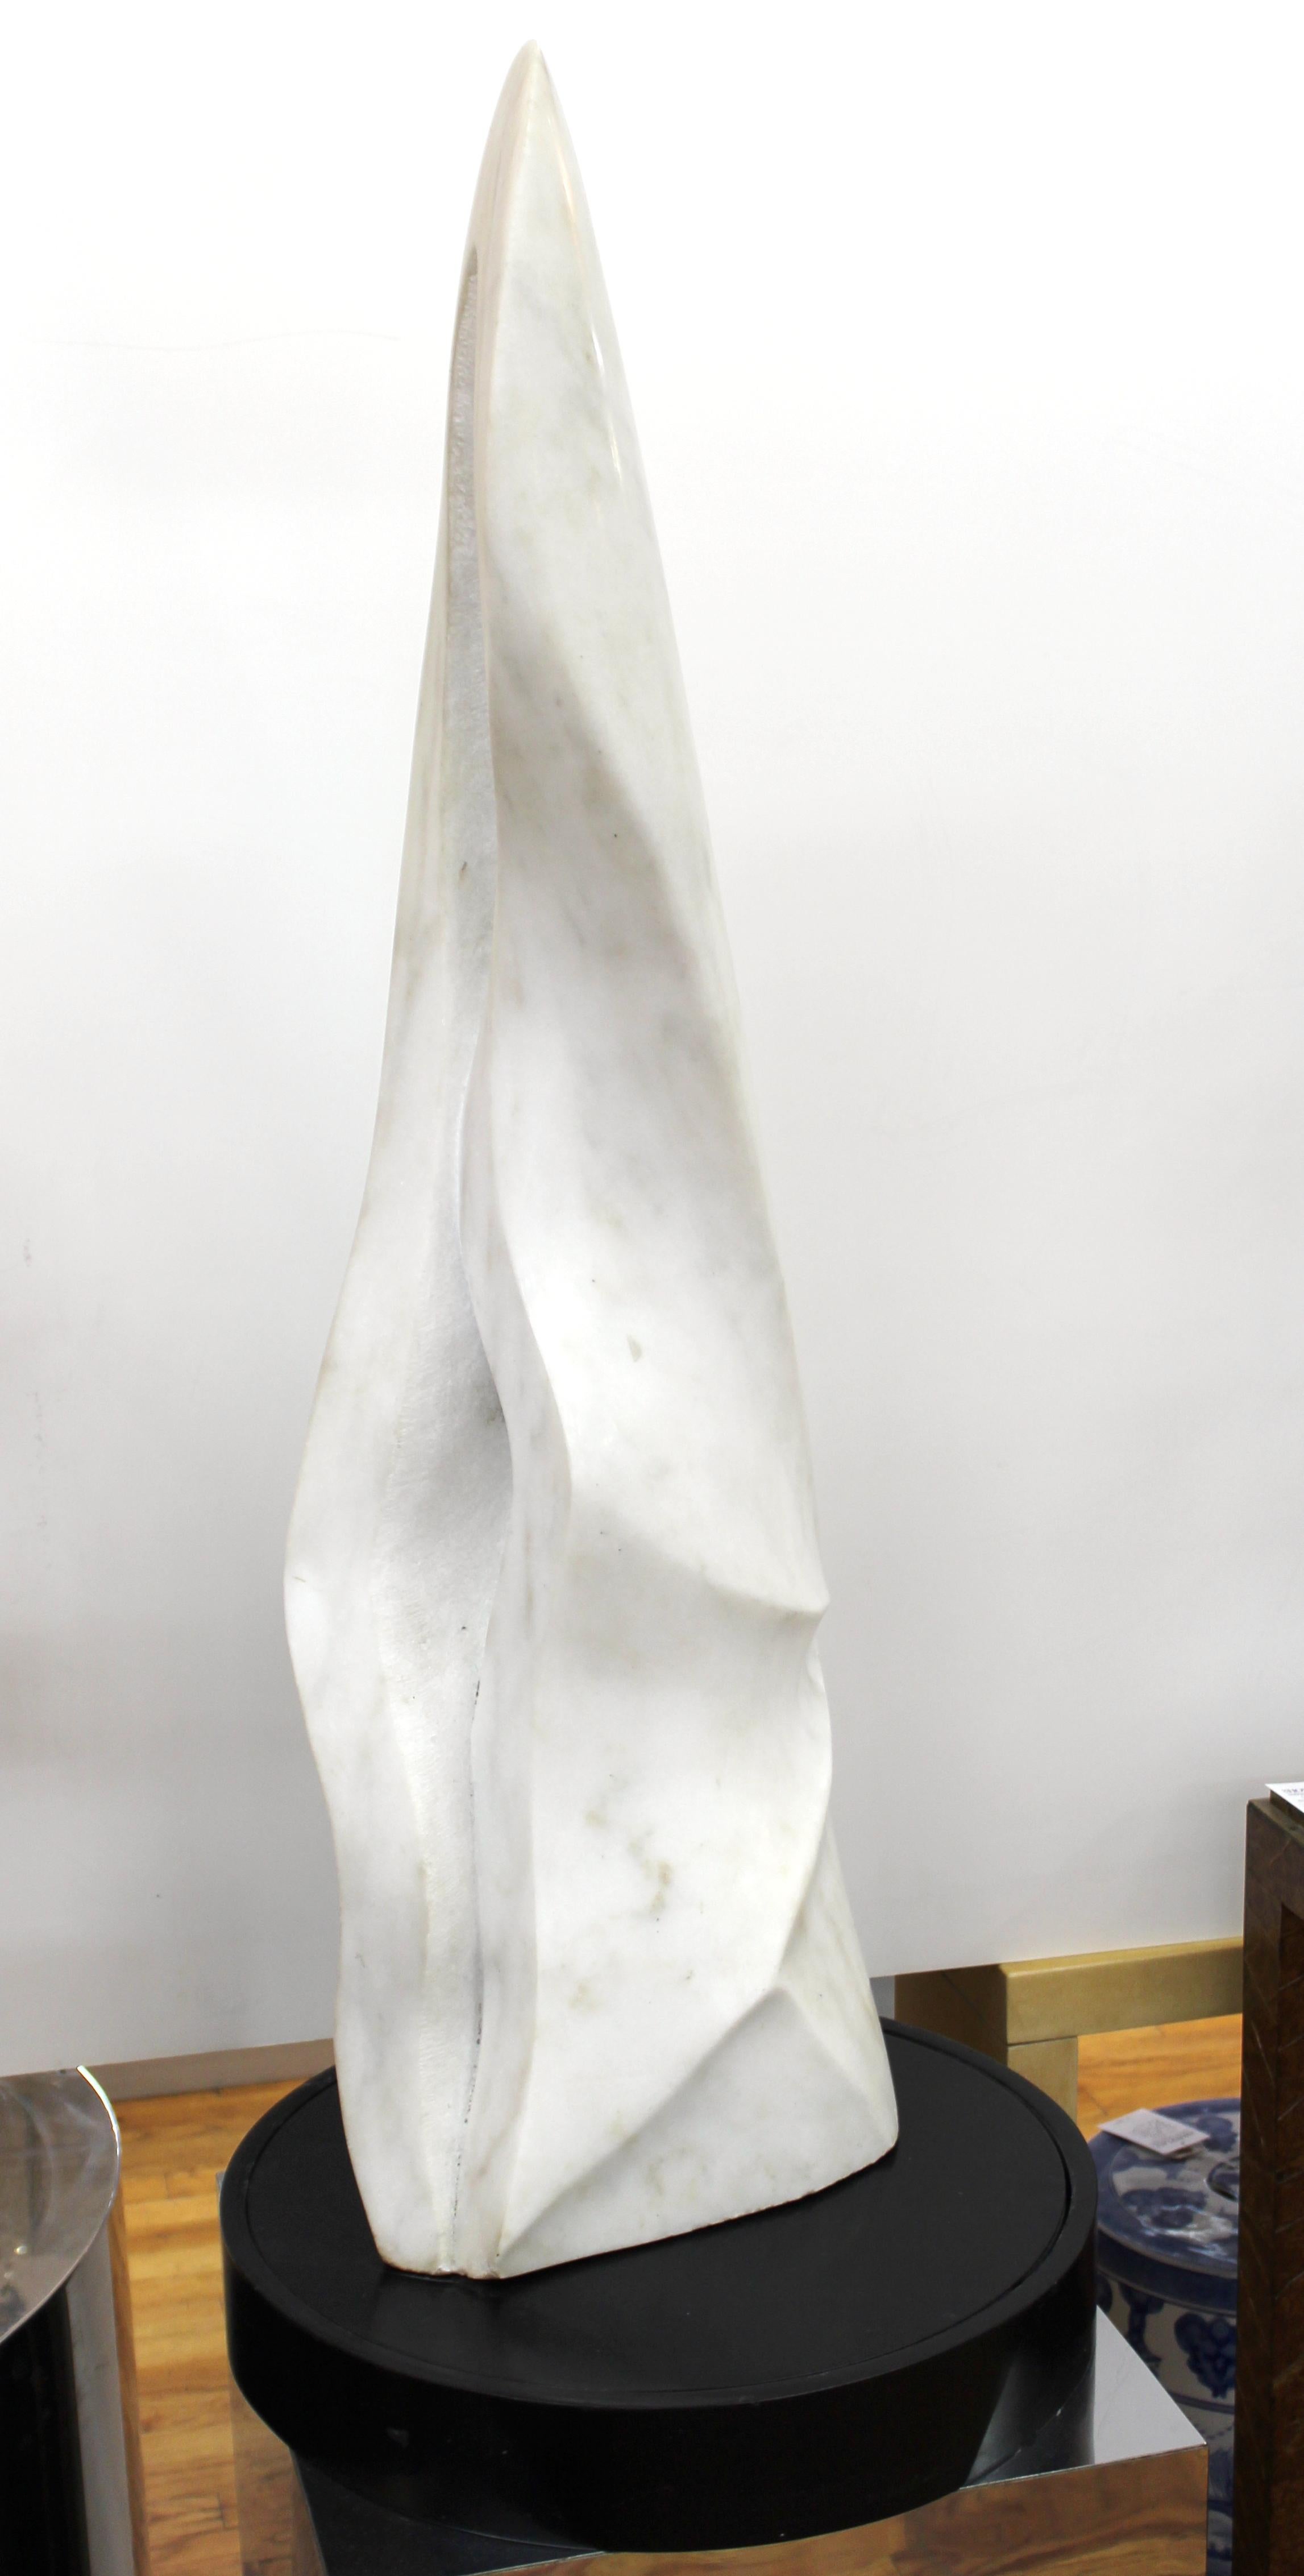 Sculpture abstraite postmoderne en marbre blanc sculpté de forme anthropomorphe, signée 